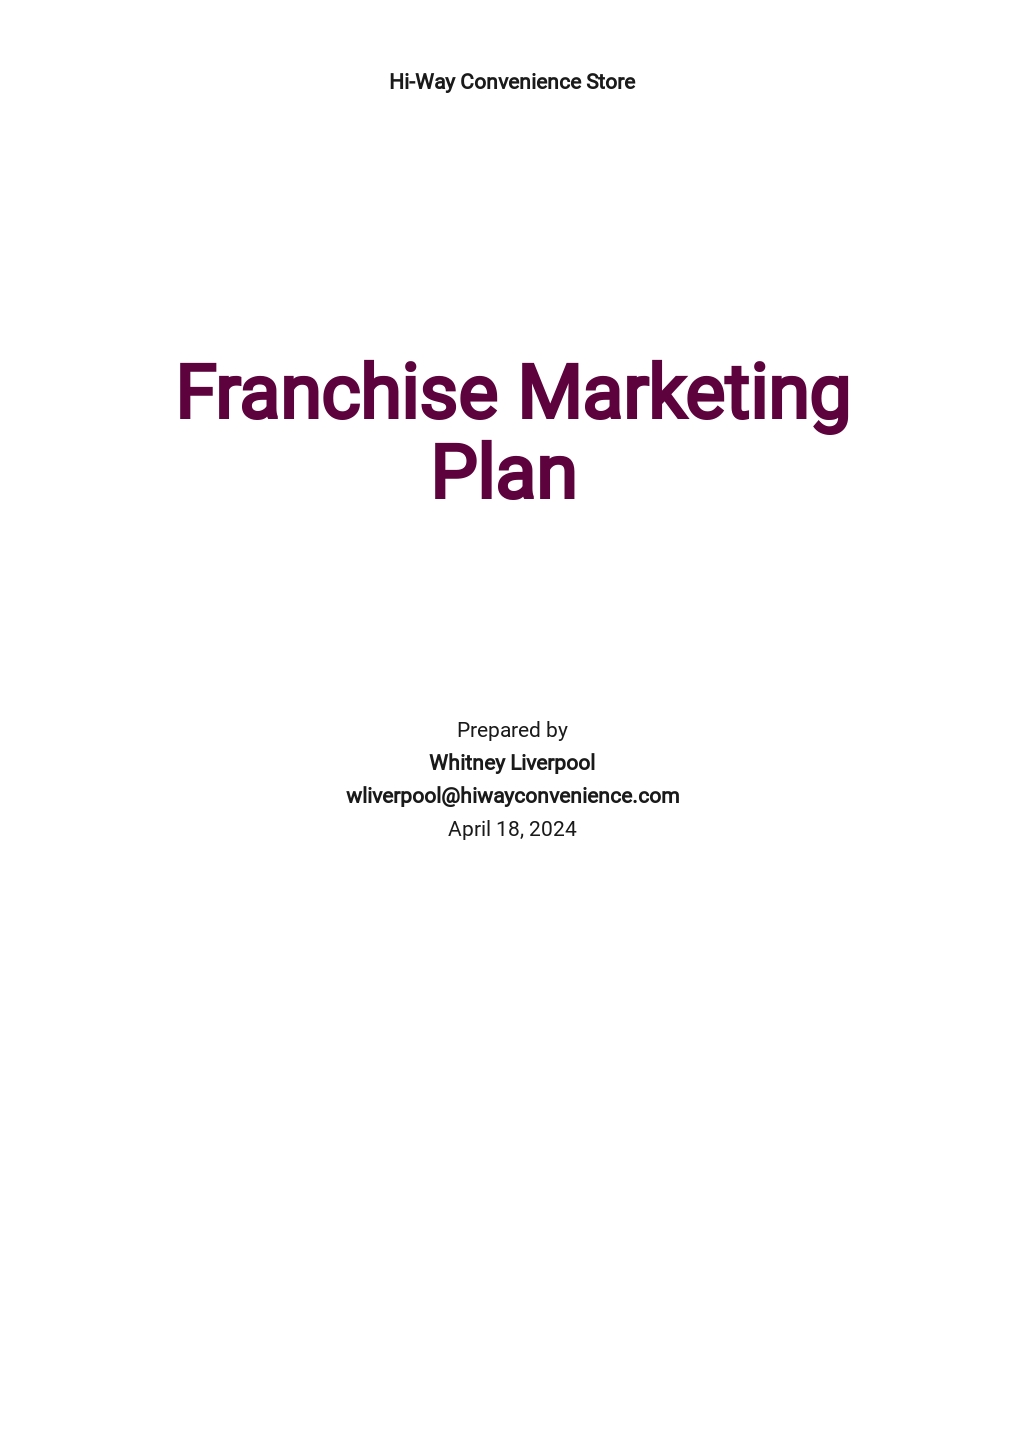 business plan franchise restaurant